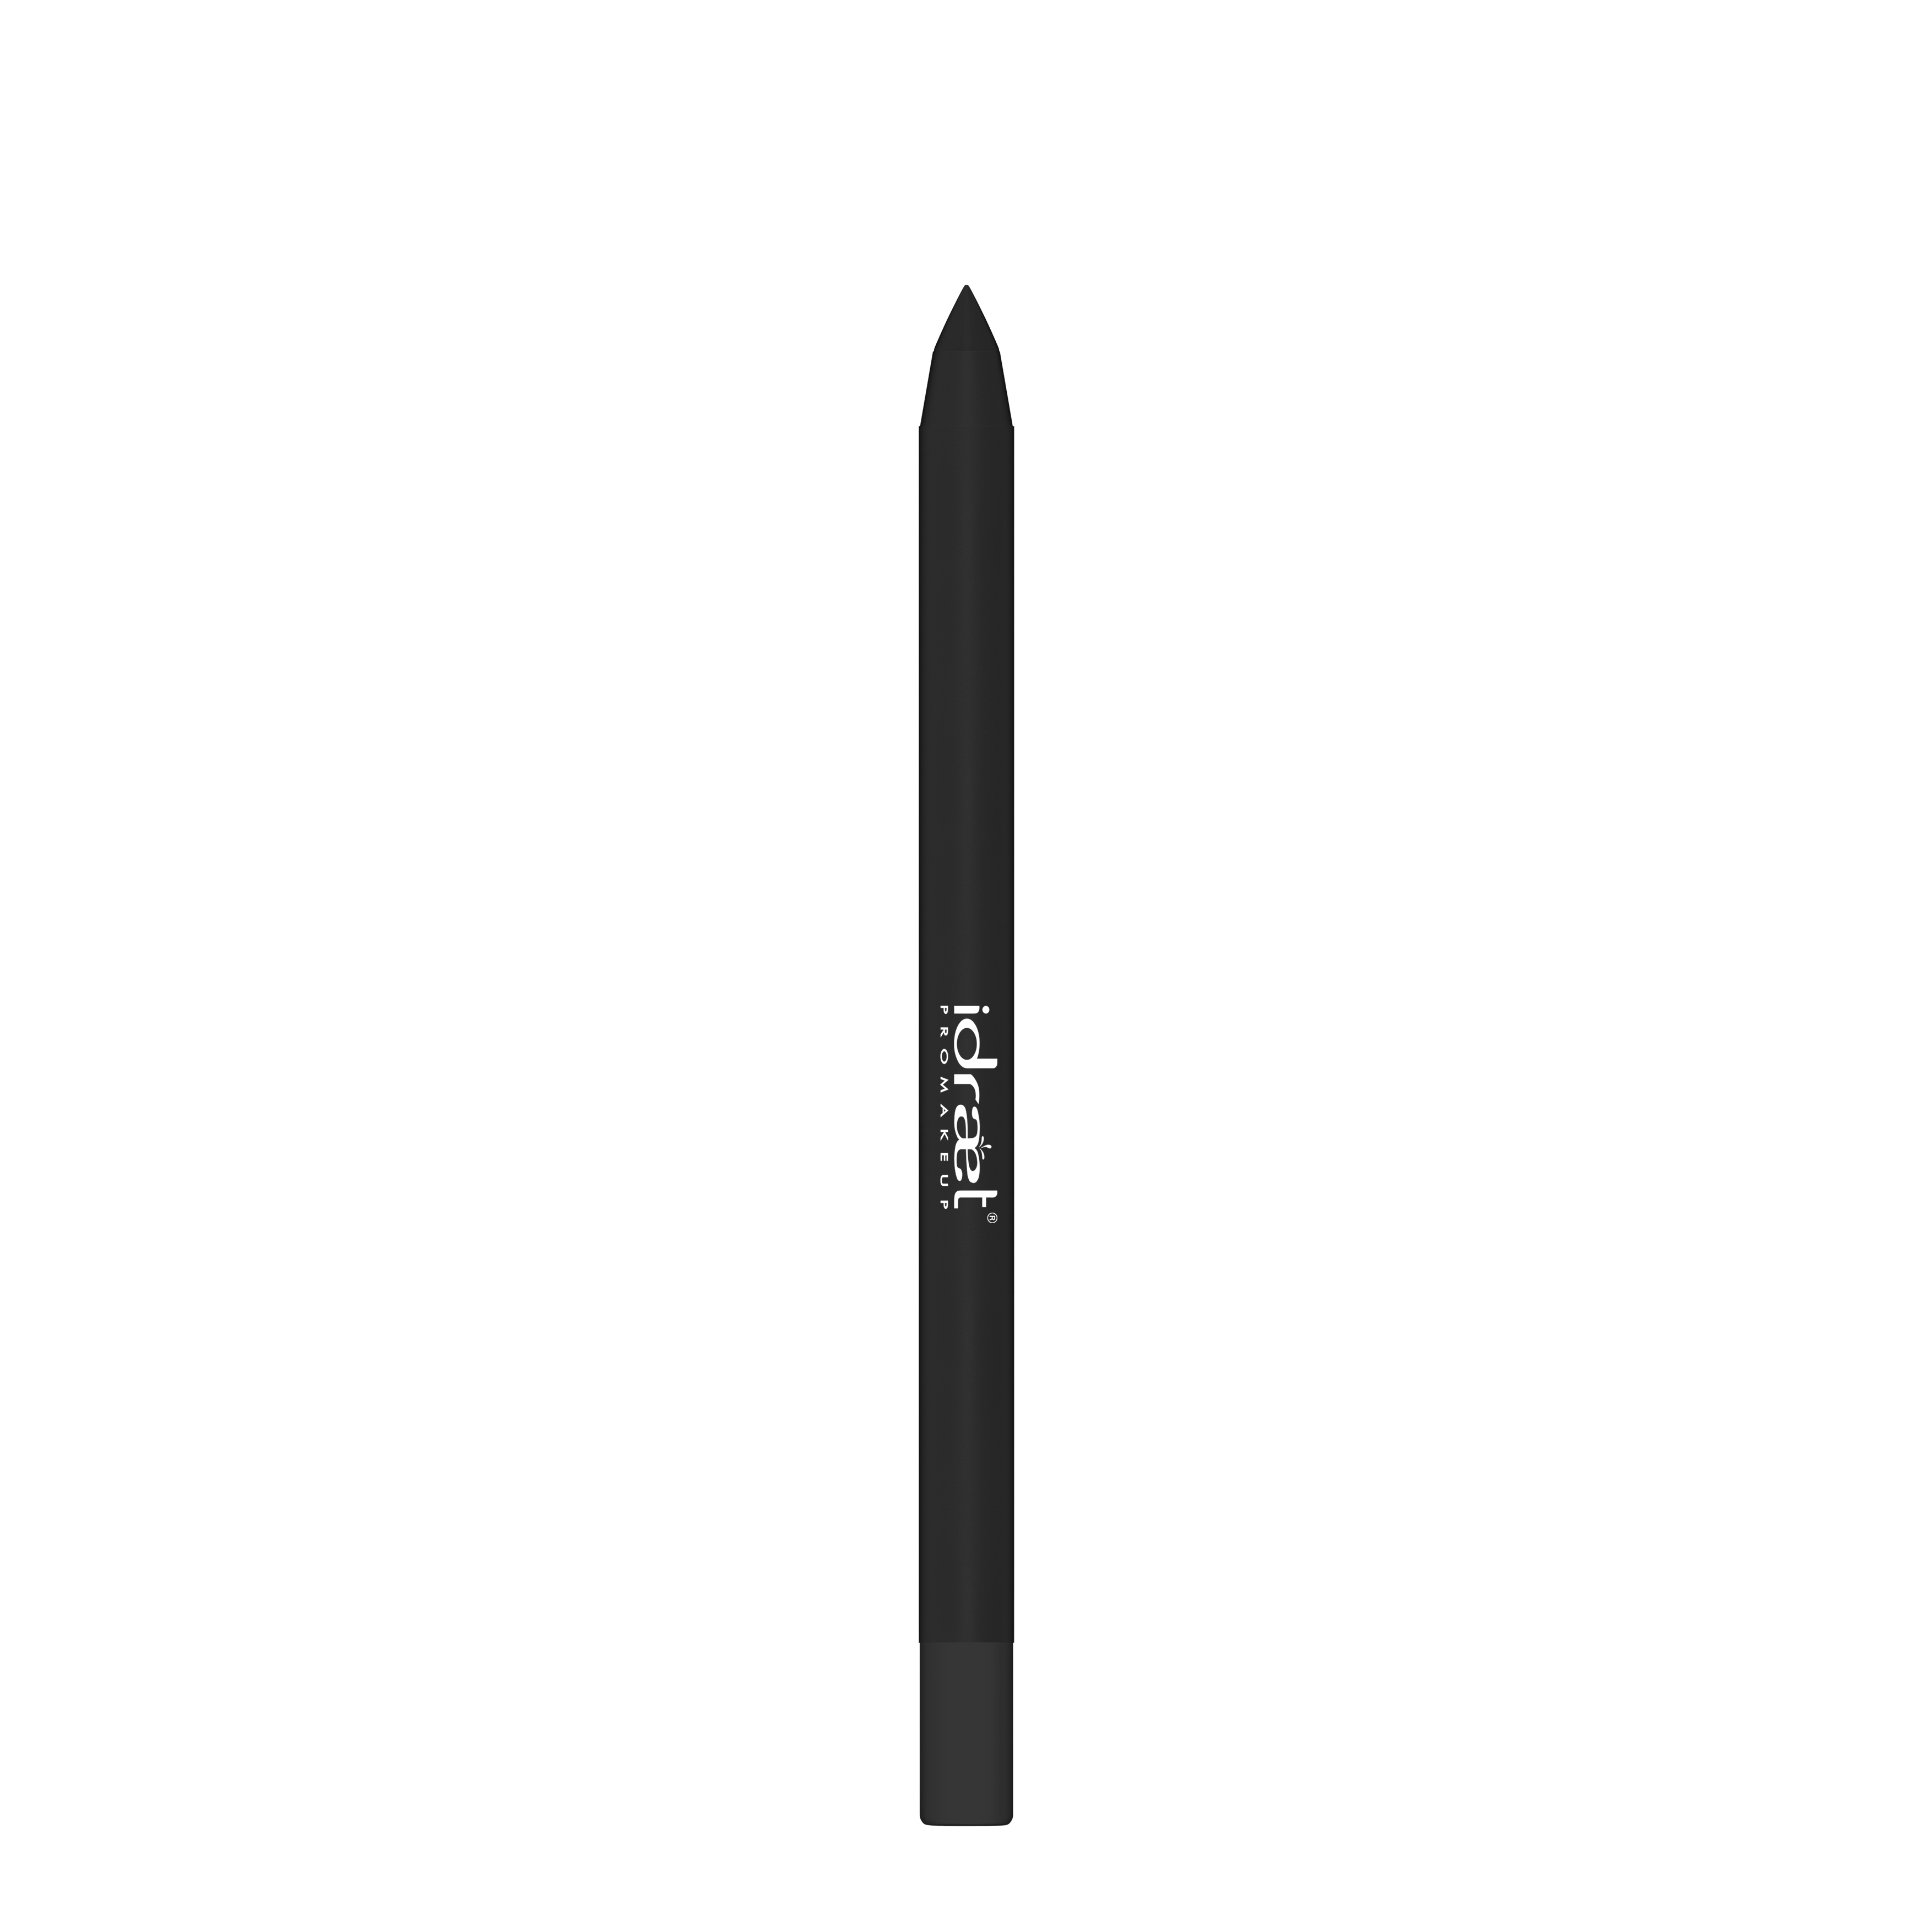 IDRAET - Lapiz Delineador a Prueba de Agua - Eye Pencil Soft Touch Waterproof